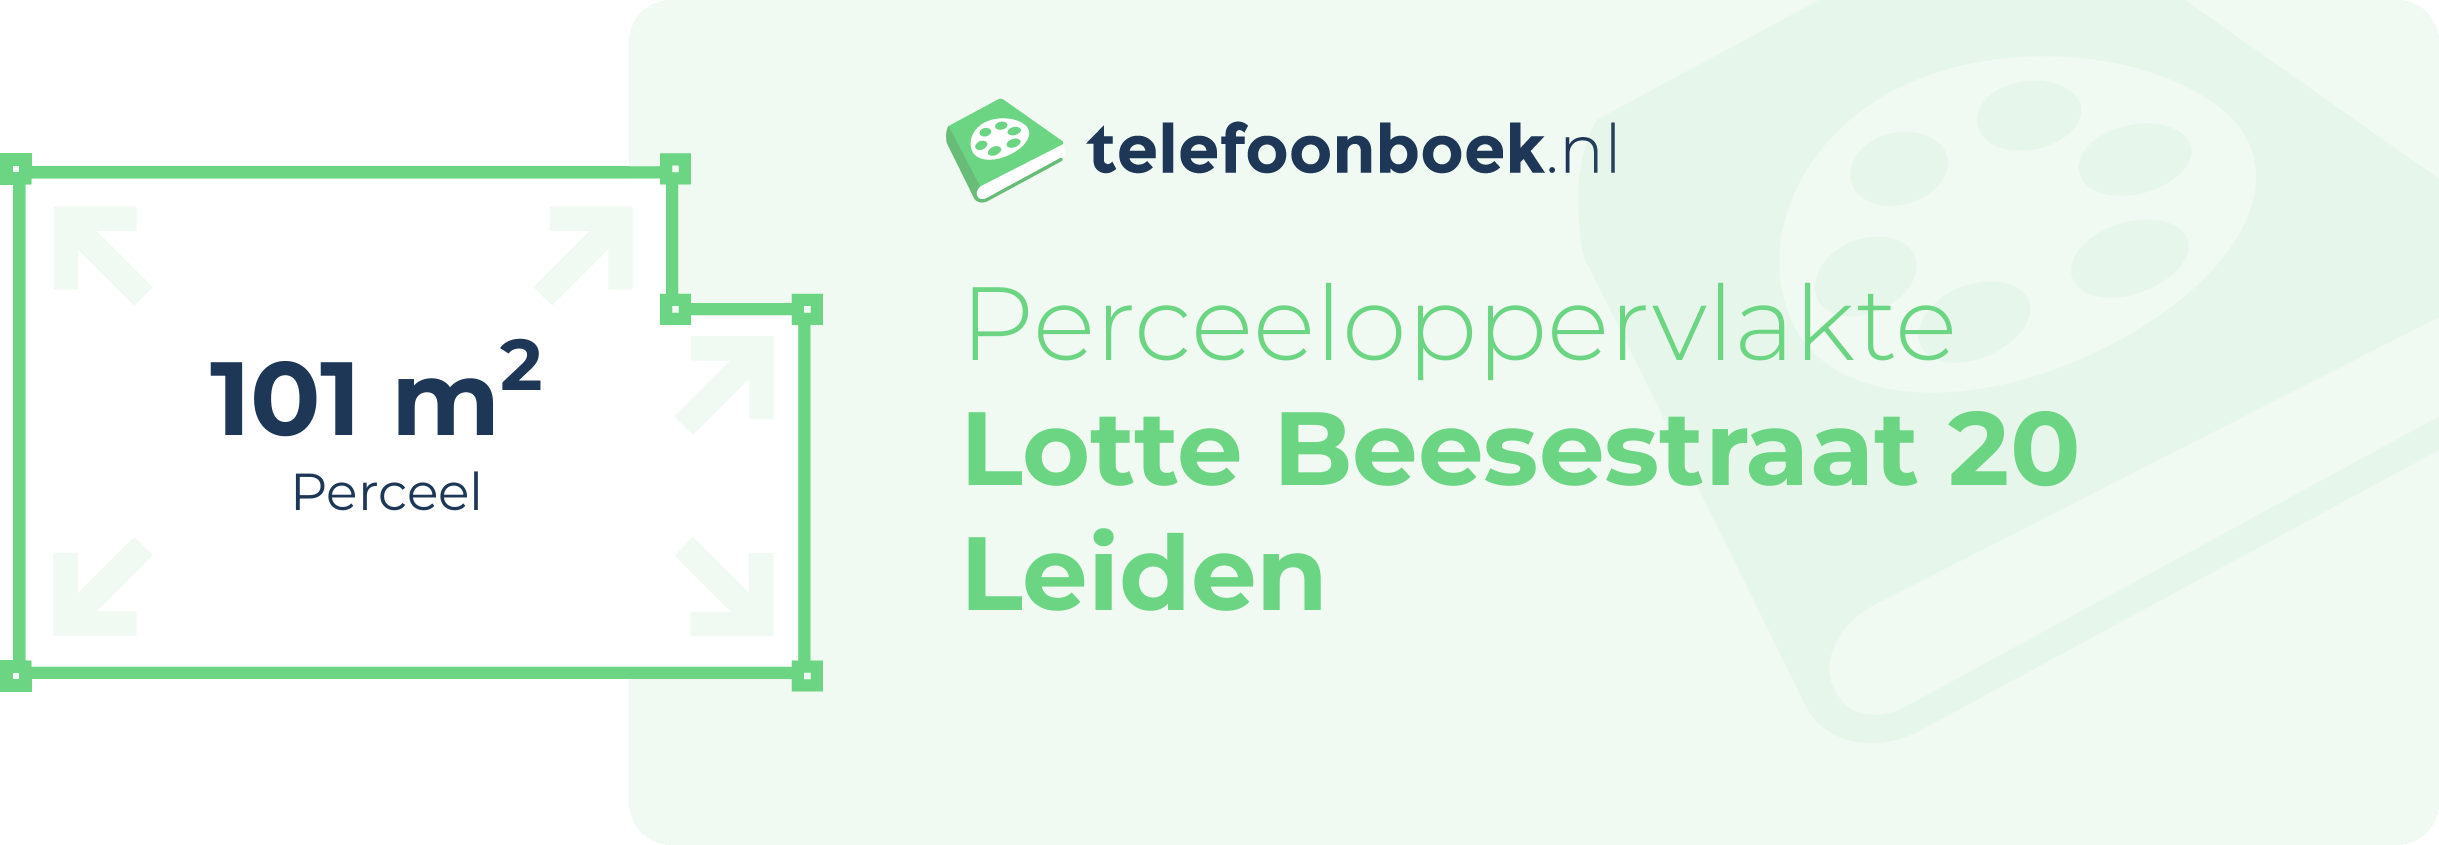 Perceeloppervlakte Lotte Beesestraat 20 Leiden